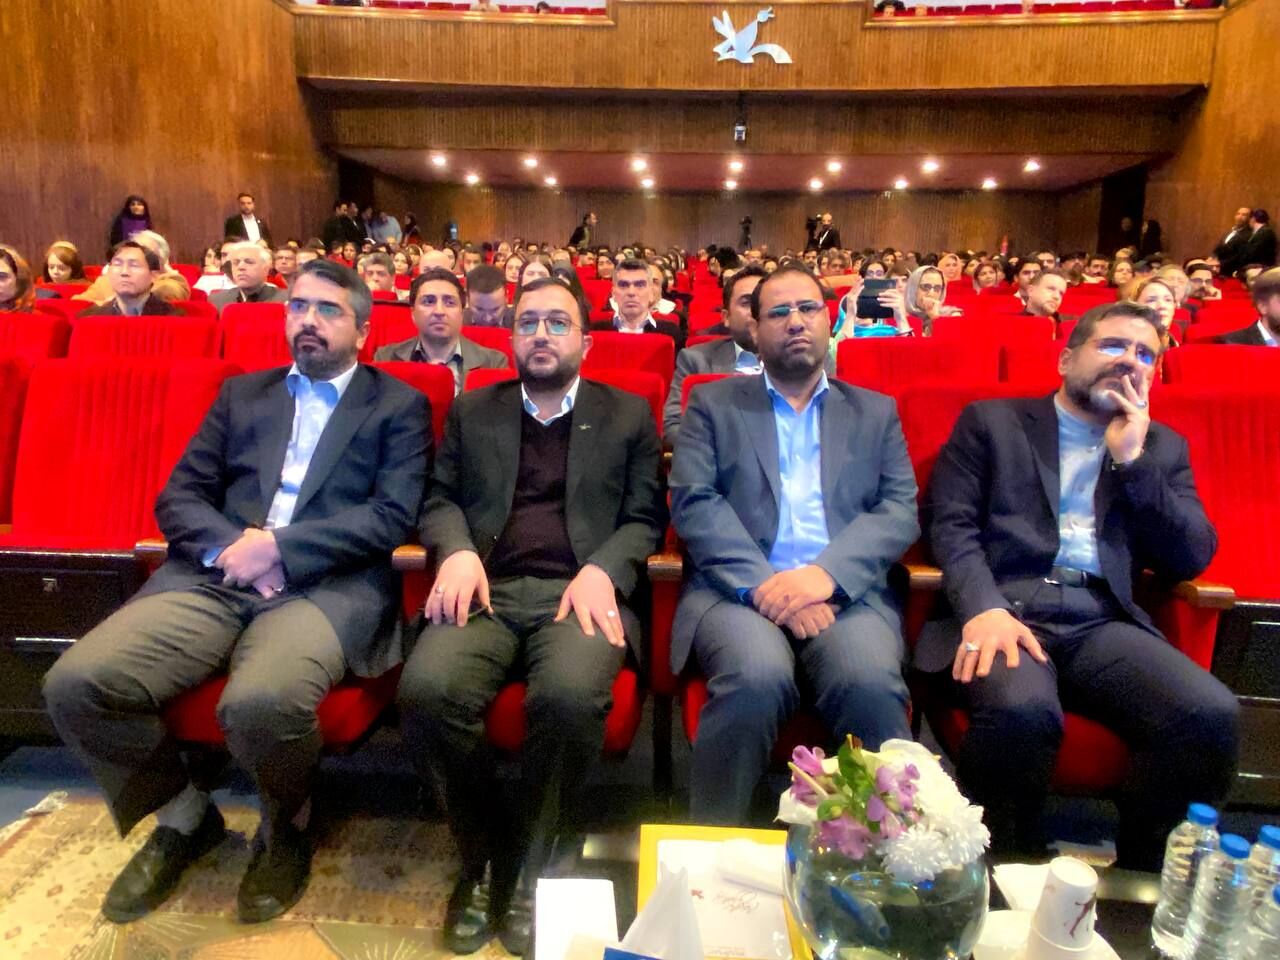 آیین پایانی سیزدهمین جشنواره بین المللی پویانمایی تهران با حضور وزیر فرهنگ برگزار شد